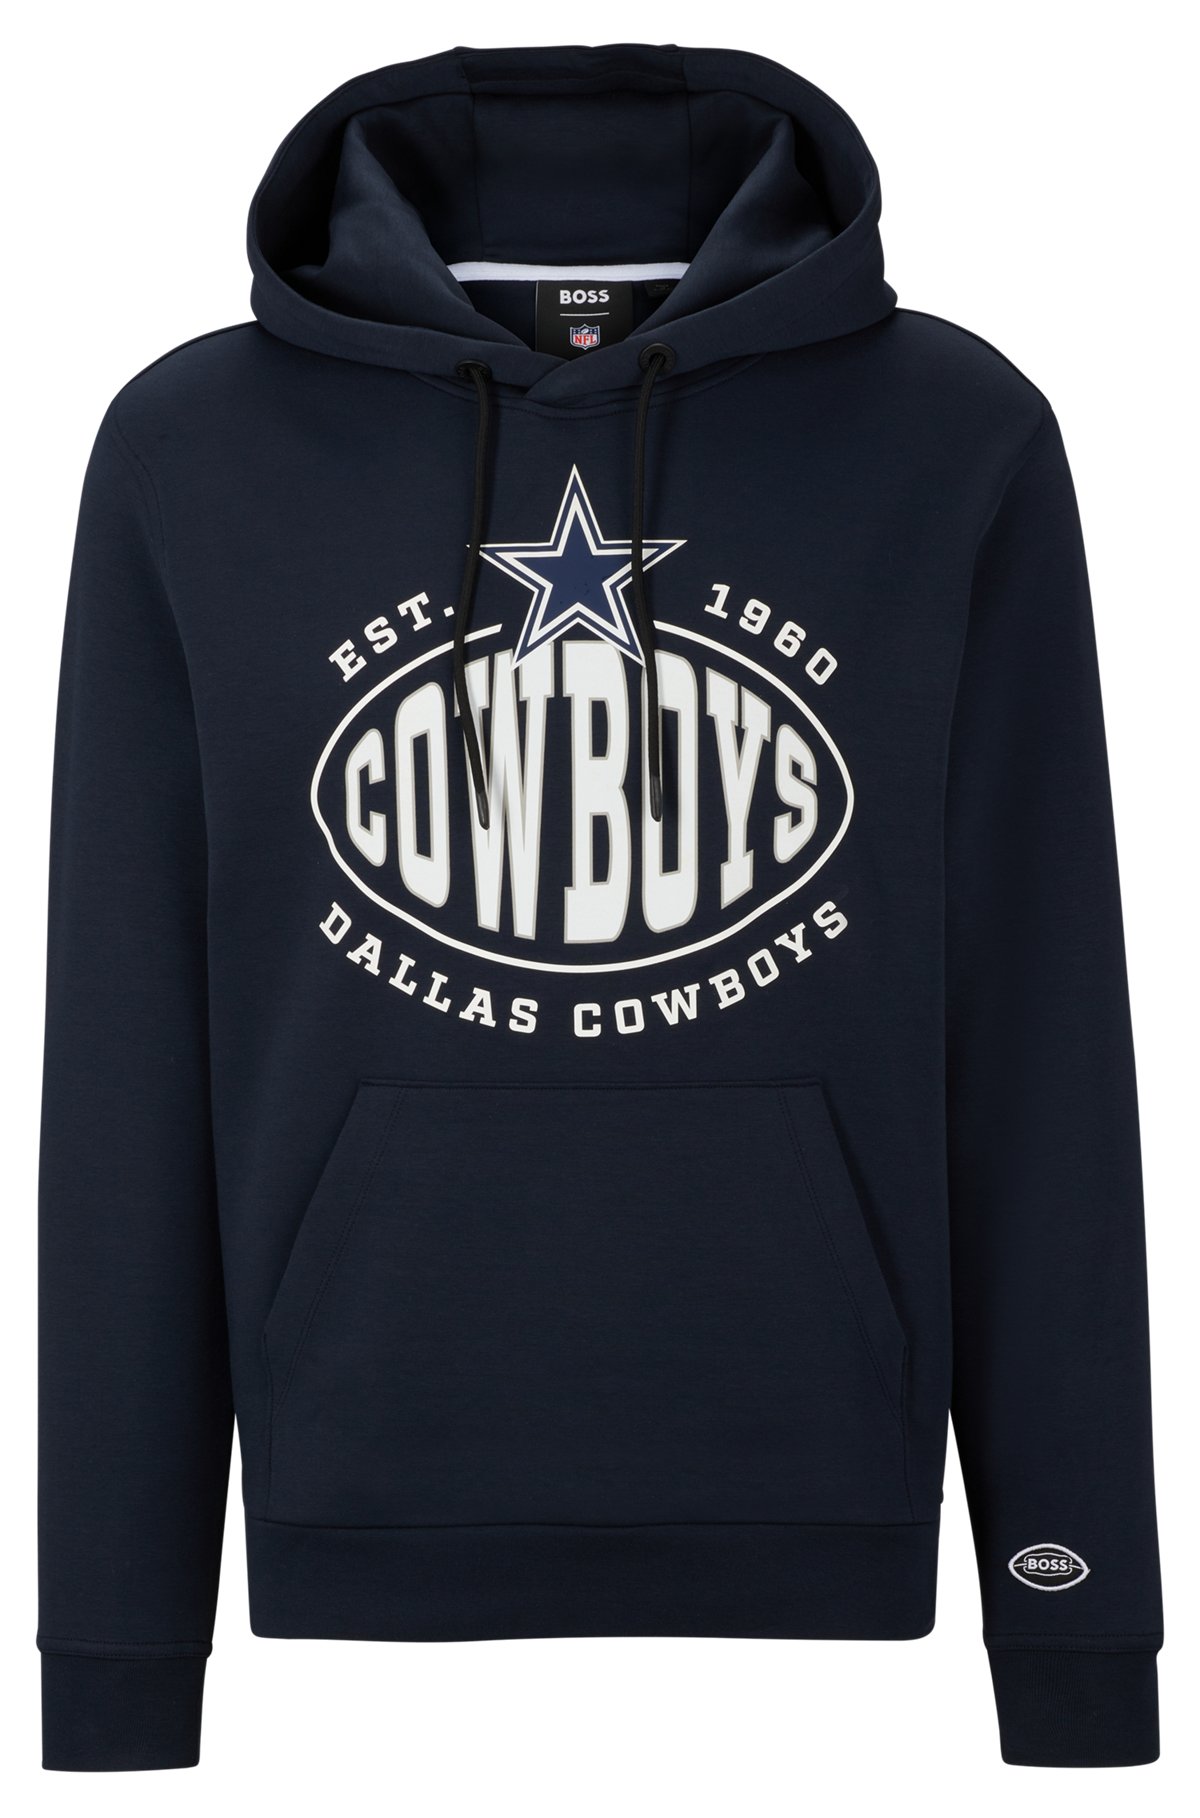  BOSS x NFL hættetrøje i bomuldsblanding med fælles branding, Cowboys